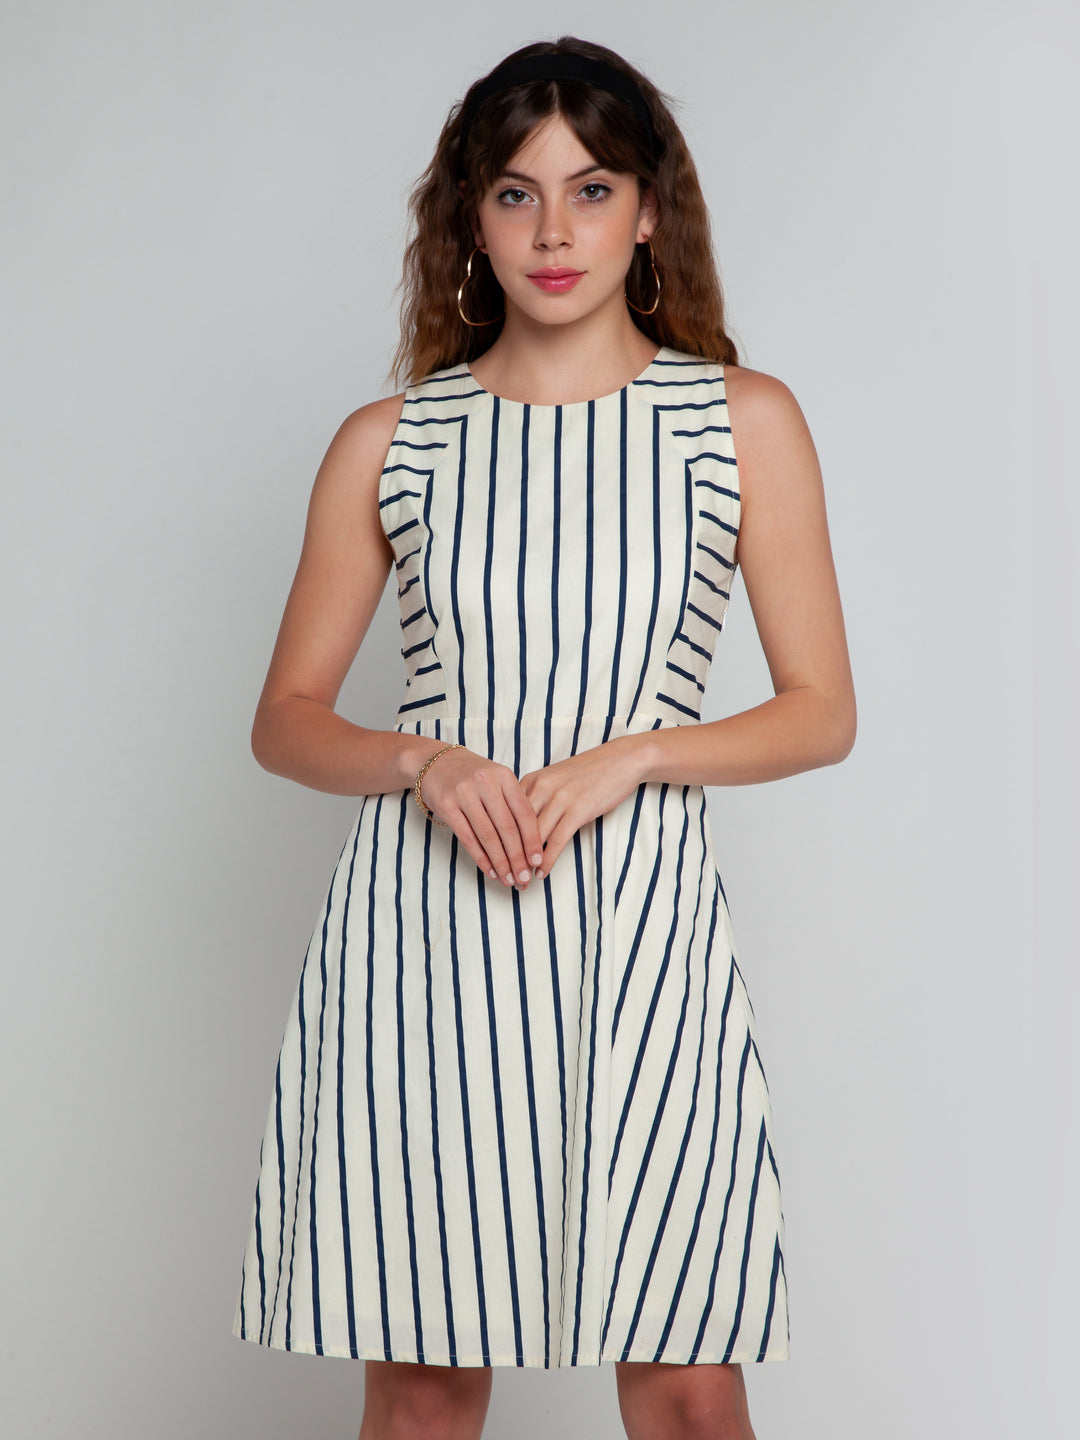 White Striped Short Dress For Women